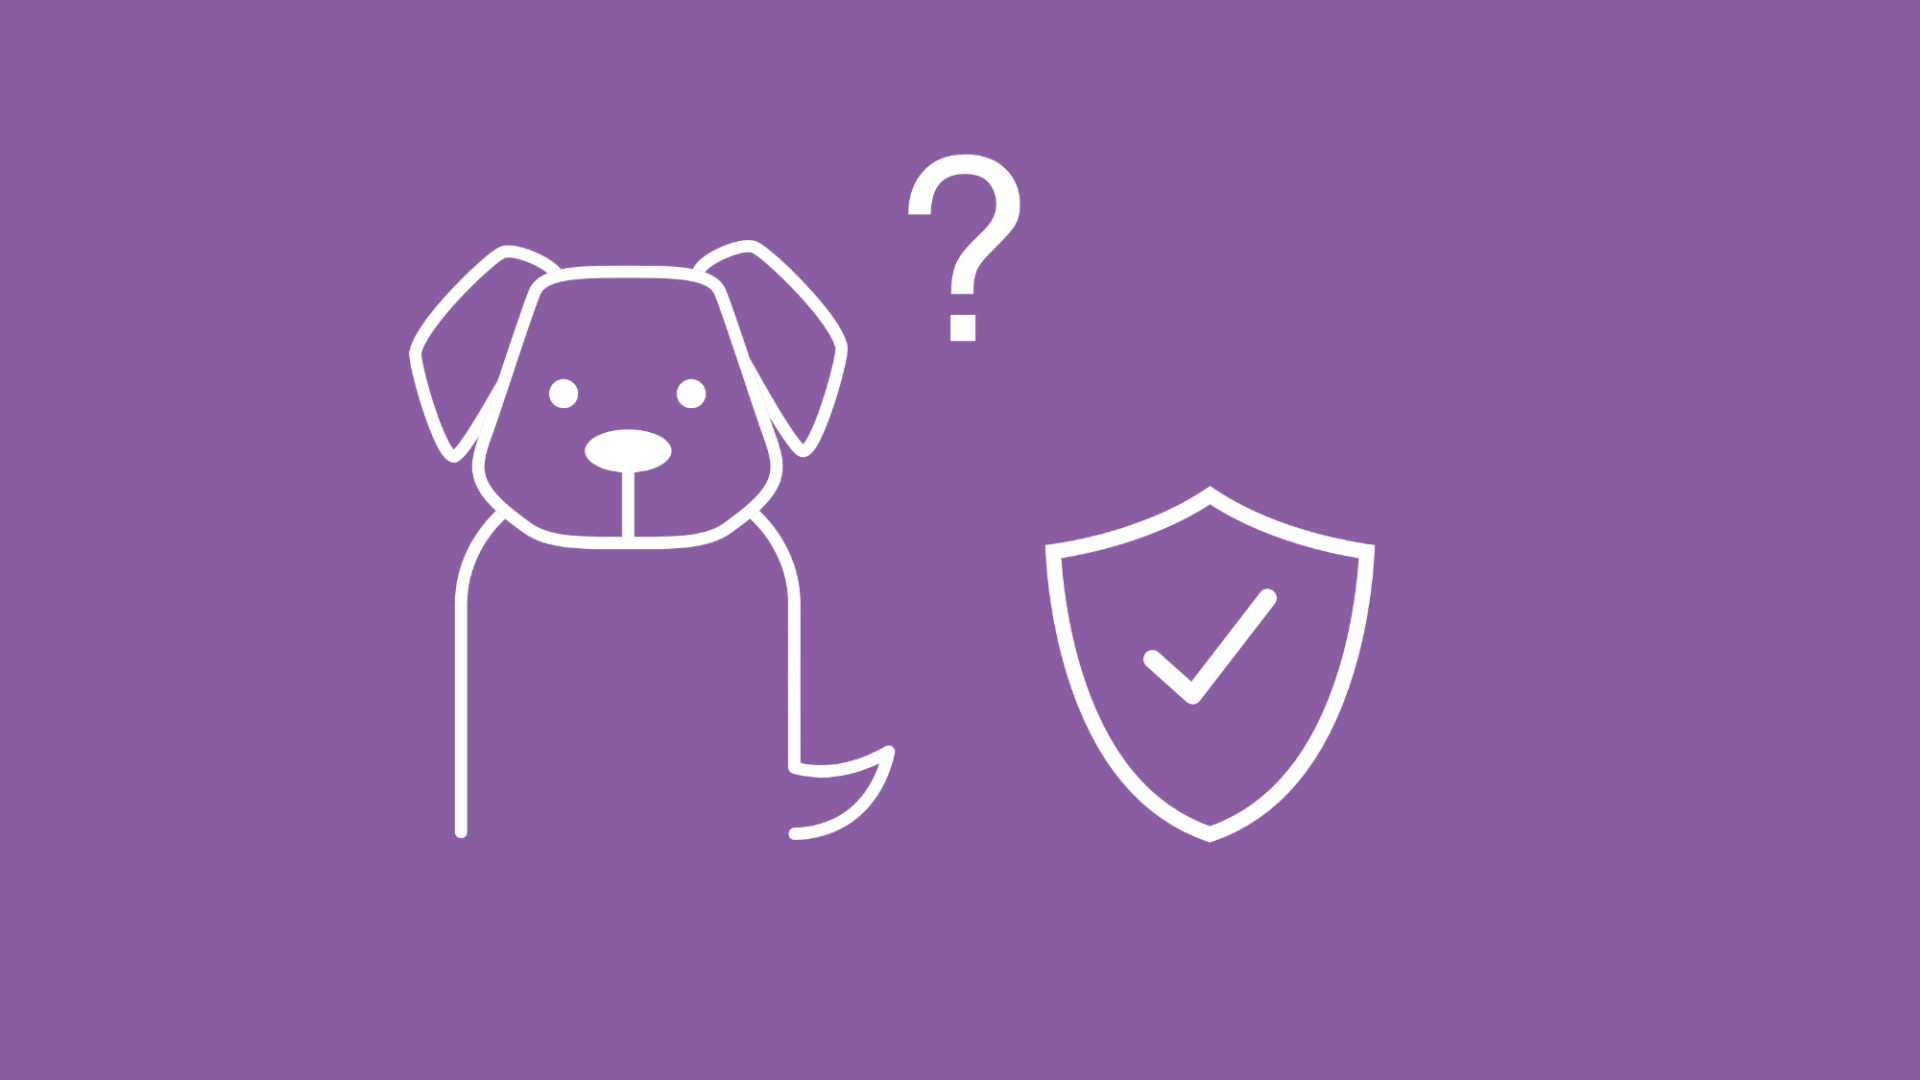 Die Grafik zeigt einen Hund mit einem Fragezeichen, was die Frage symbolisiert, ob eine Hundekrankenversicherung sinnvoll ist.